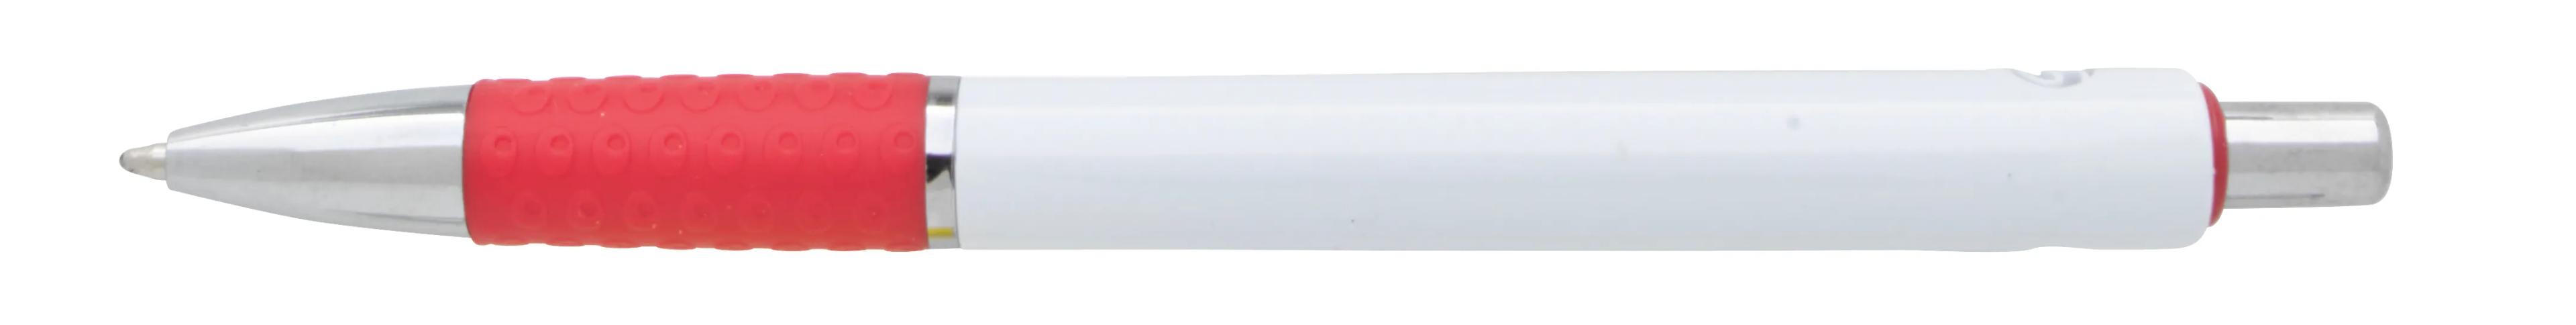 Souvenir® Image Grip Pen 26 of 50